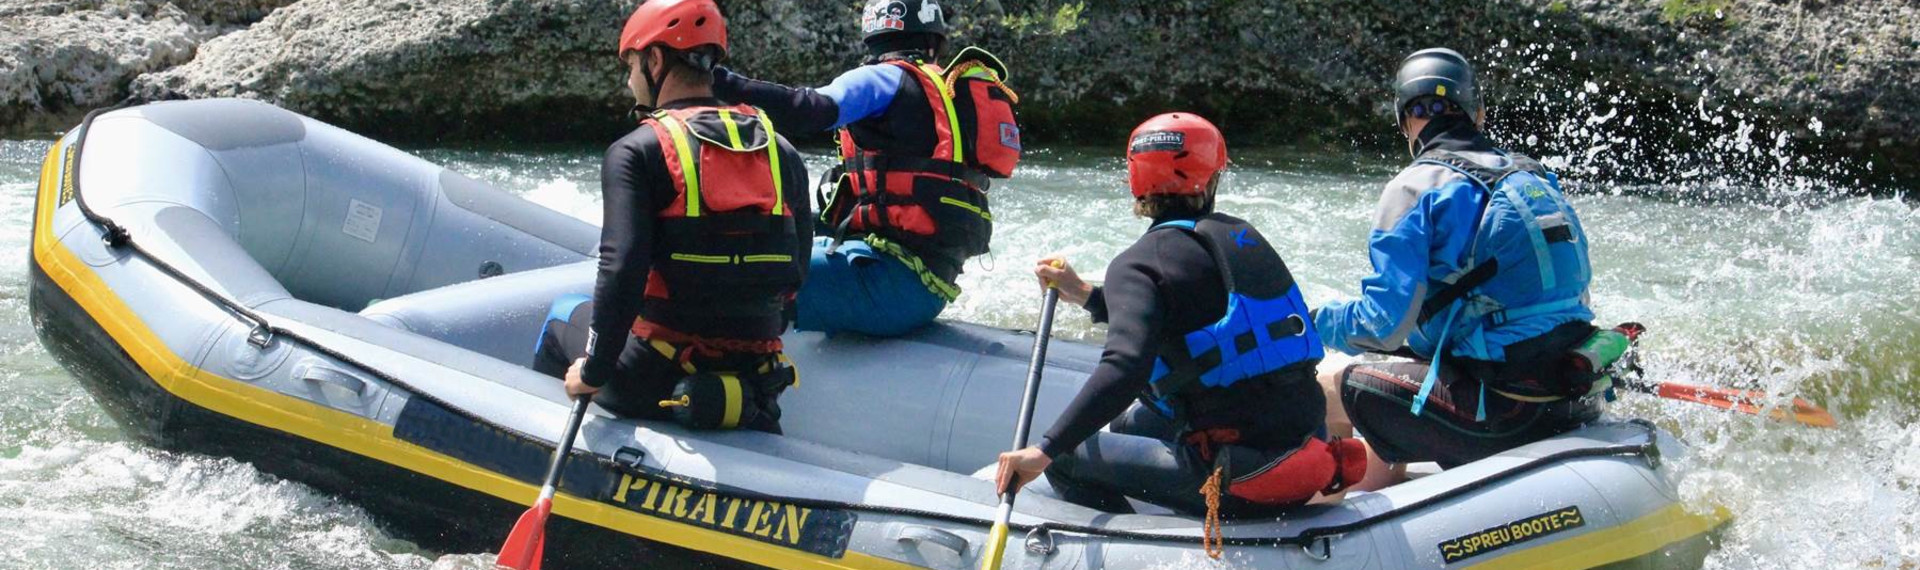 Wildwasser-Rafting JGA-Spezial | Wildwasserspaß in München | Pissup Reisen